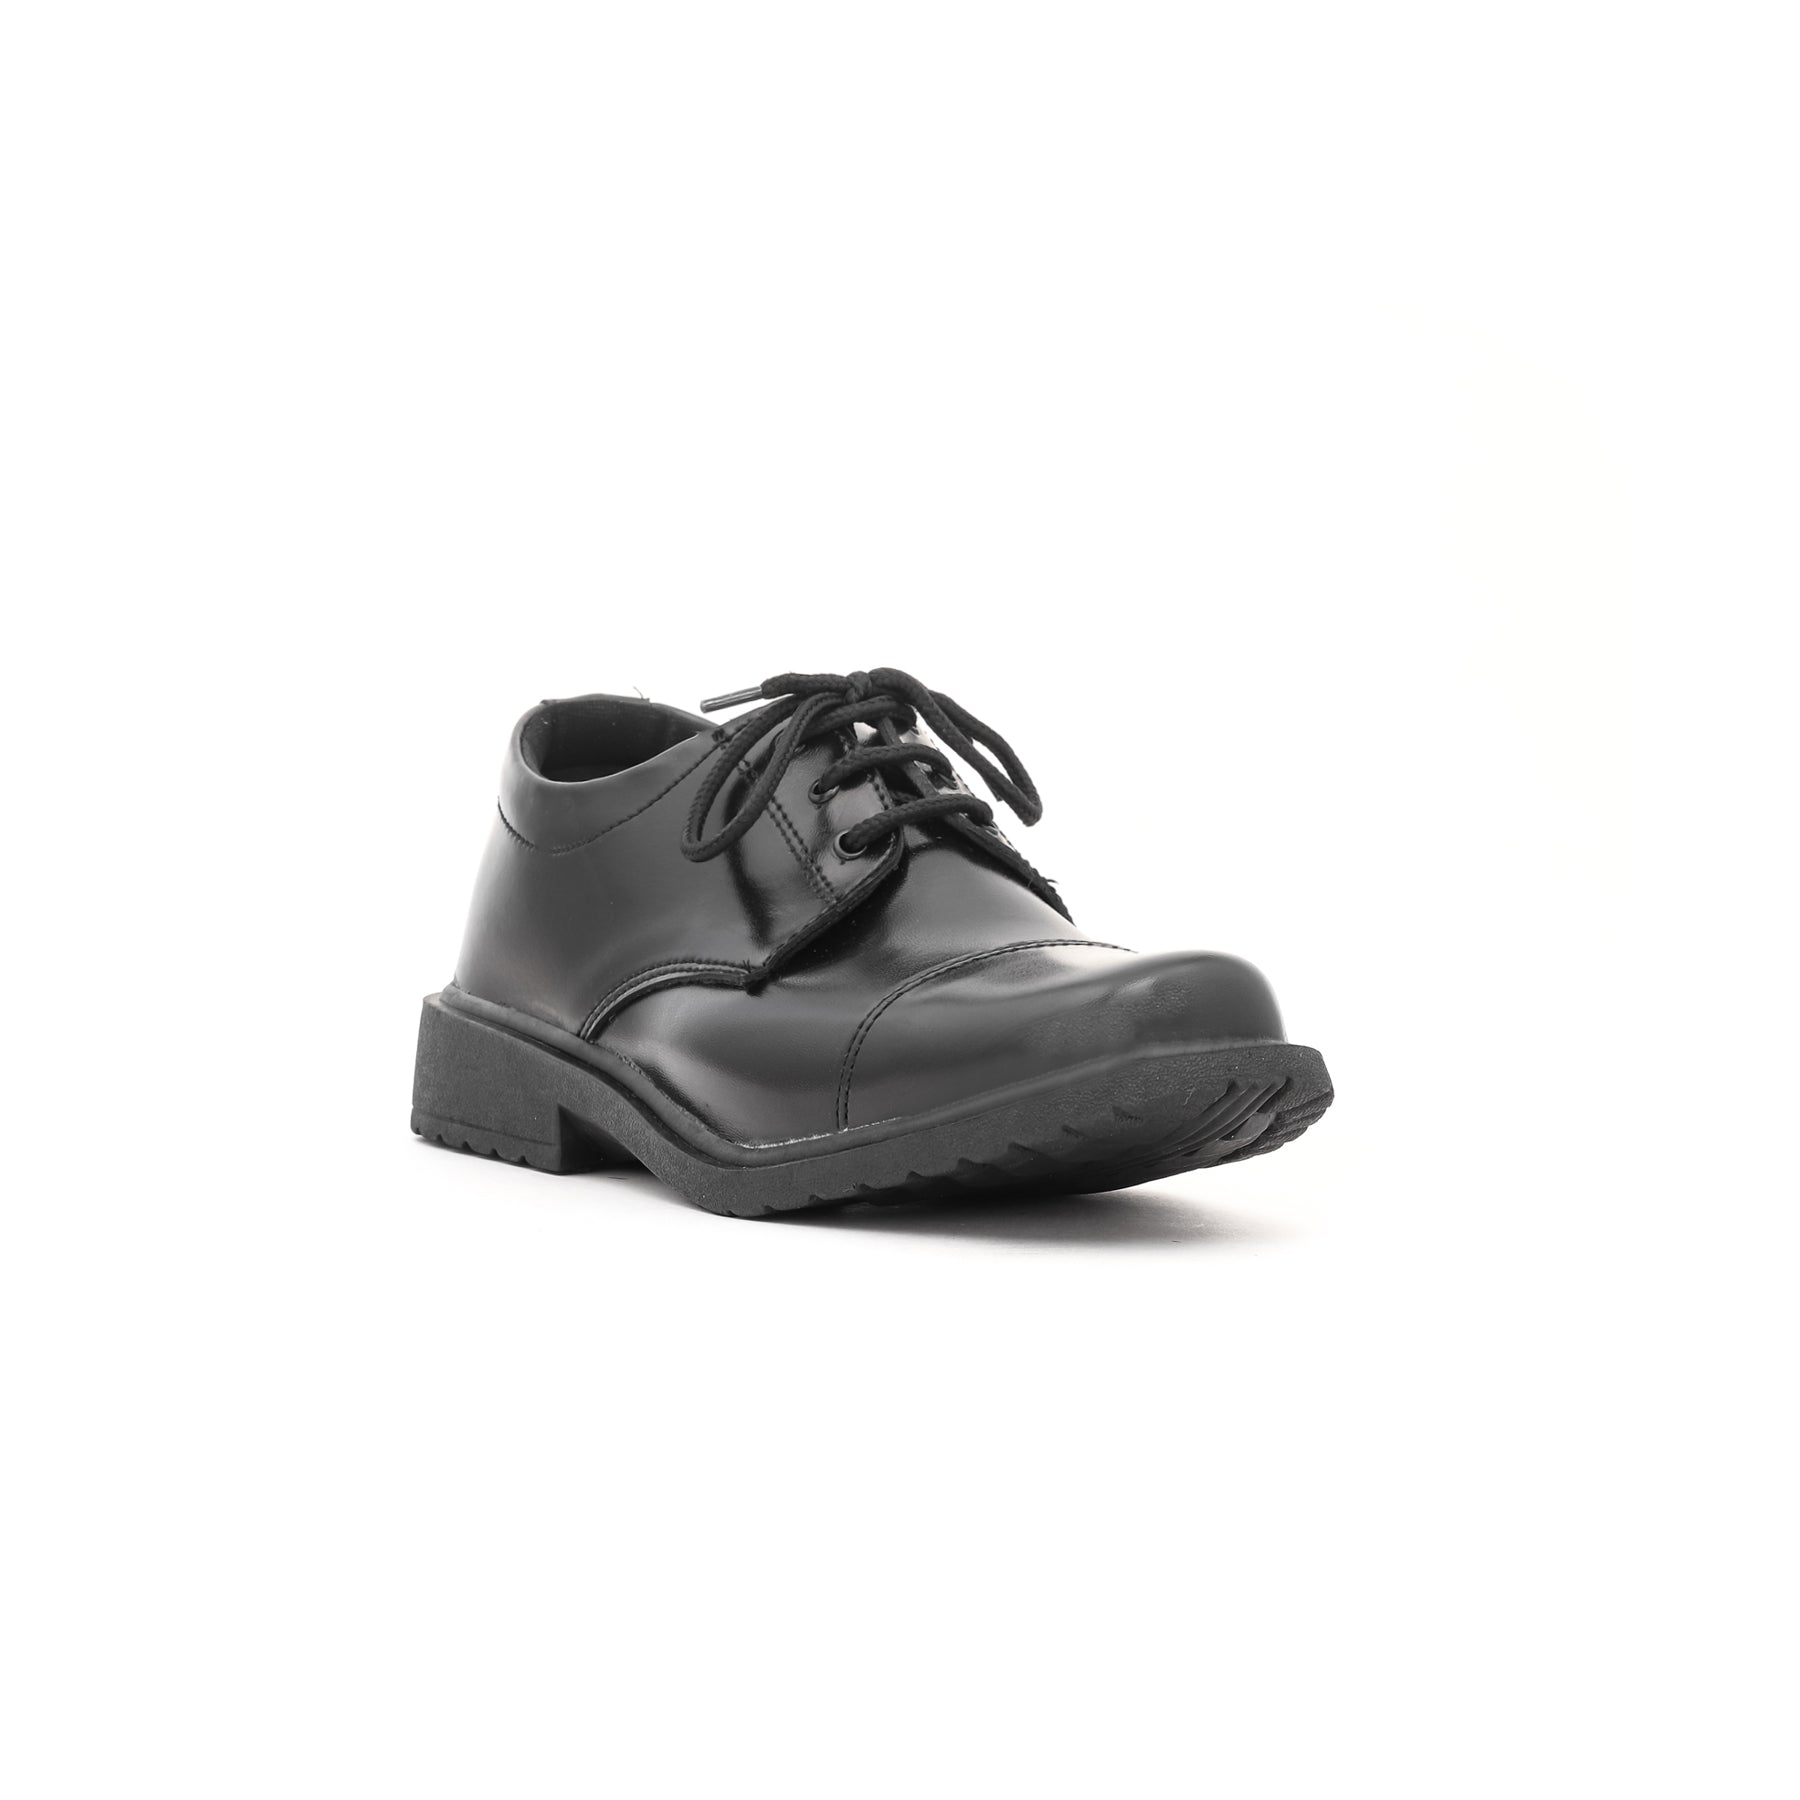 Boys Black School Shoes SK1046